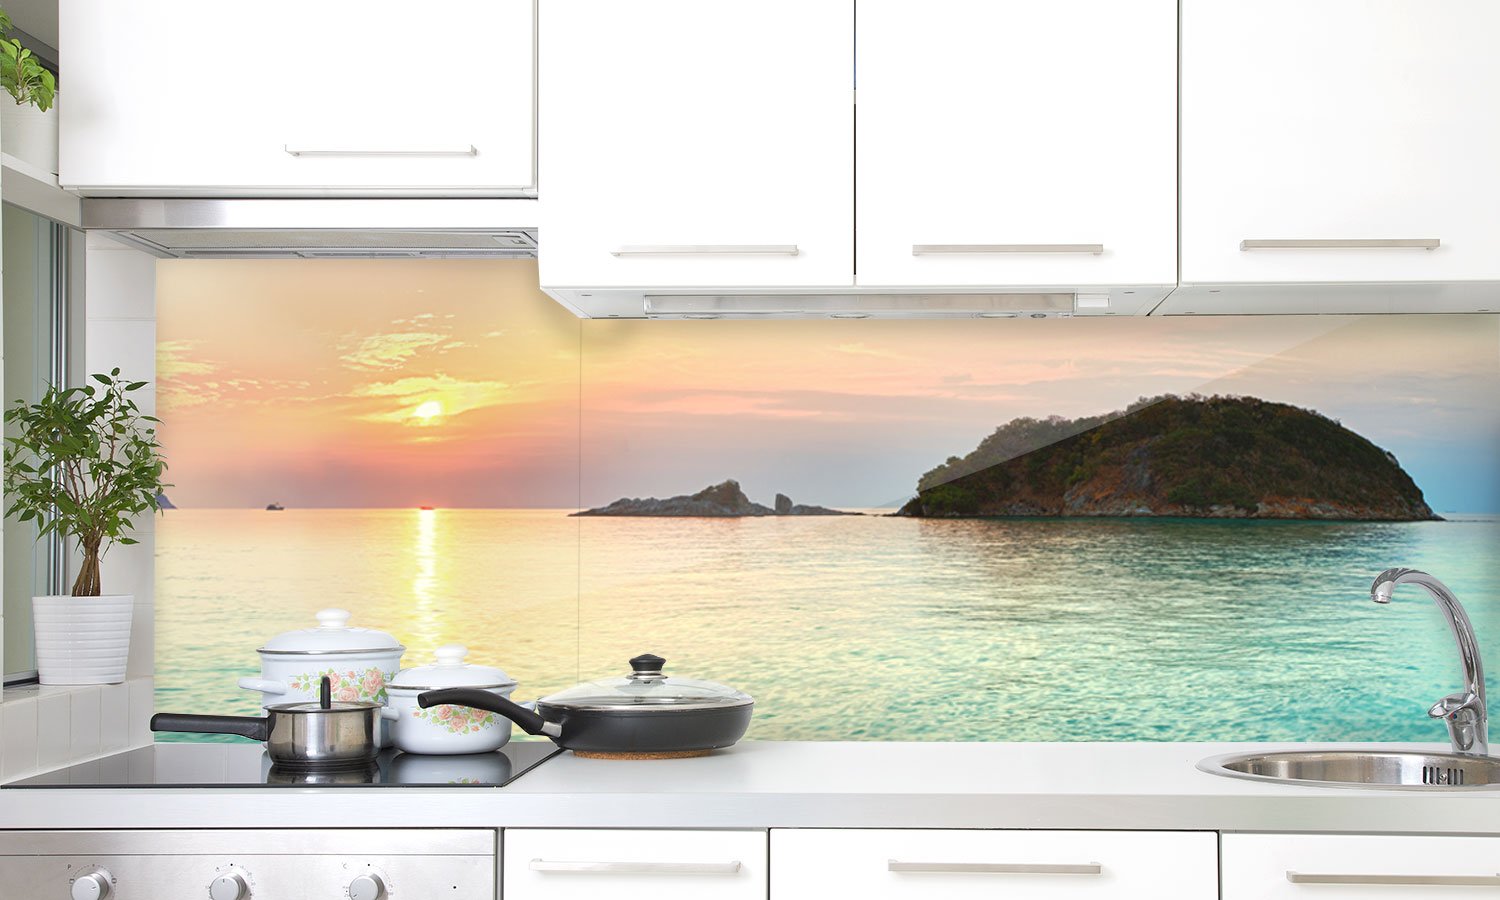 Kuhinjski paneli Abstract Smoke - Stekleni / PVC plošče / Pleksi steklo - s tiskom za kuhinjo, Stenske obloge PKU008 - Life-decor.si